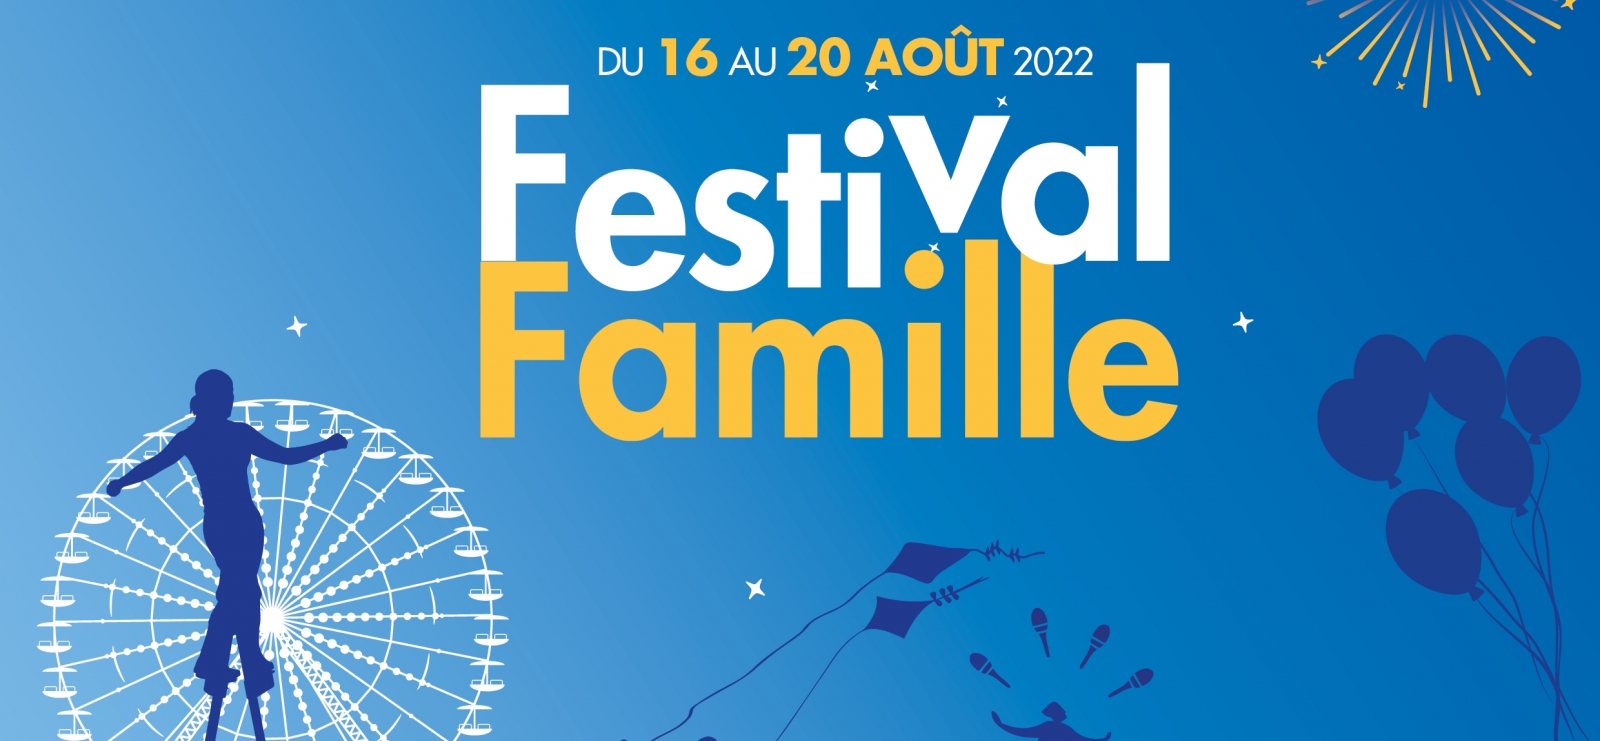 Famille Festival